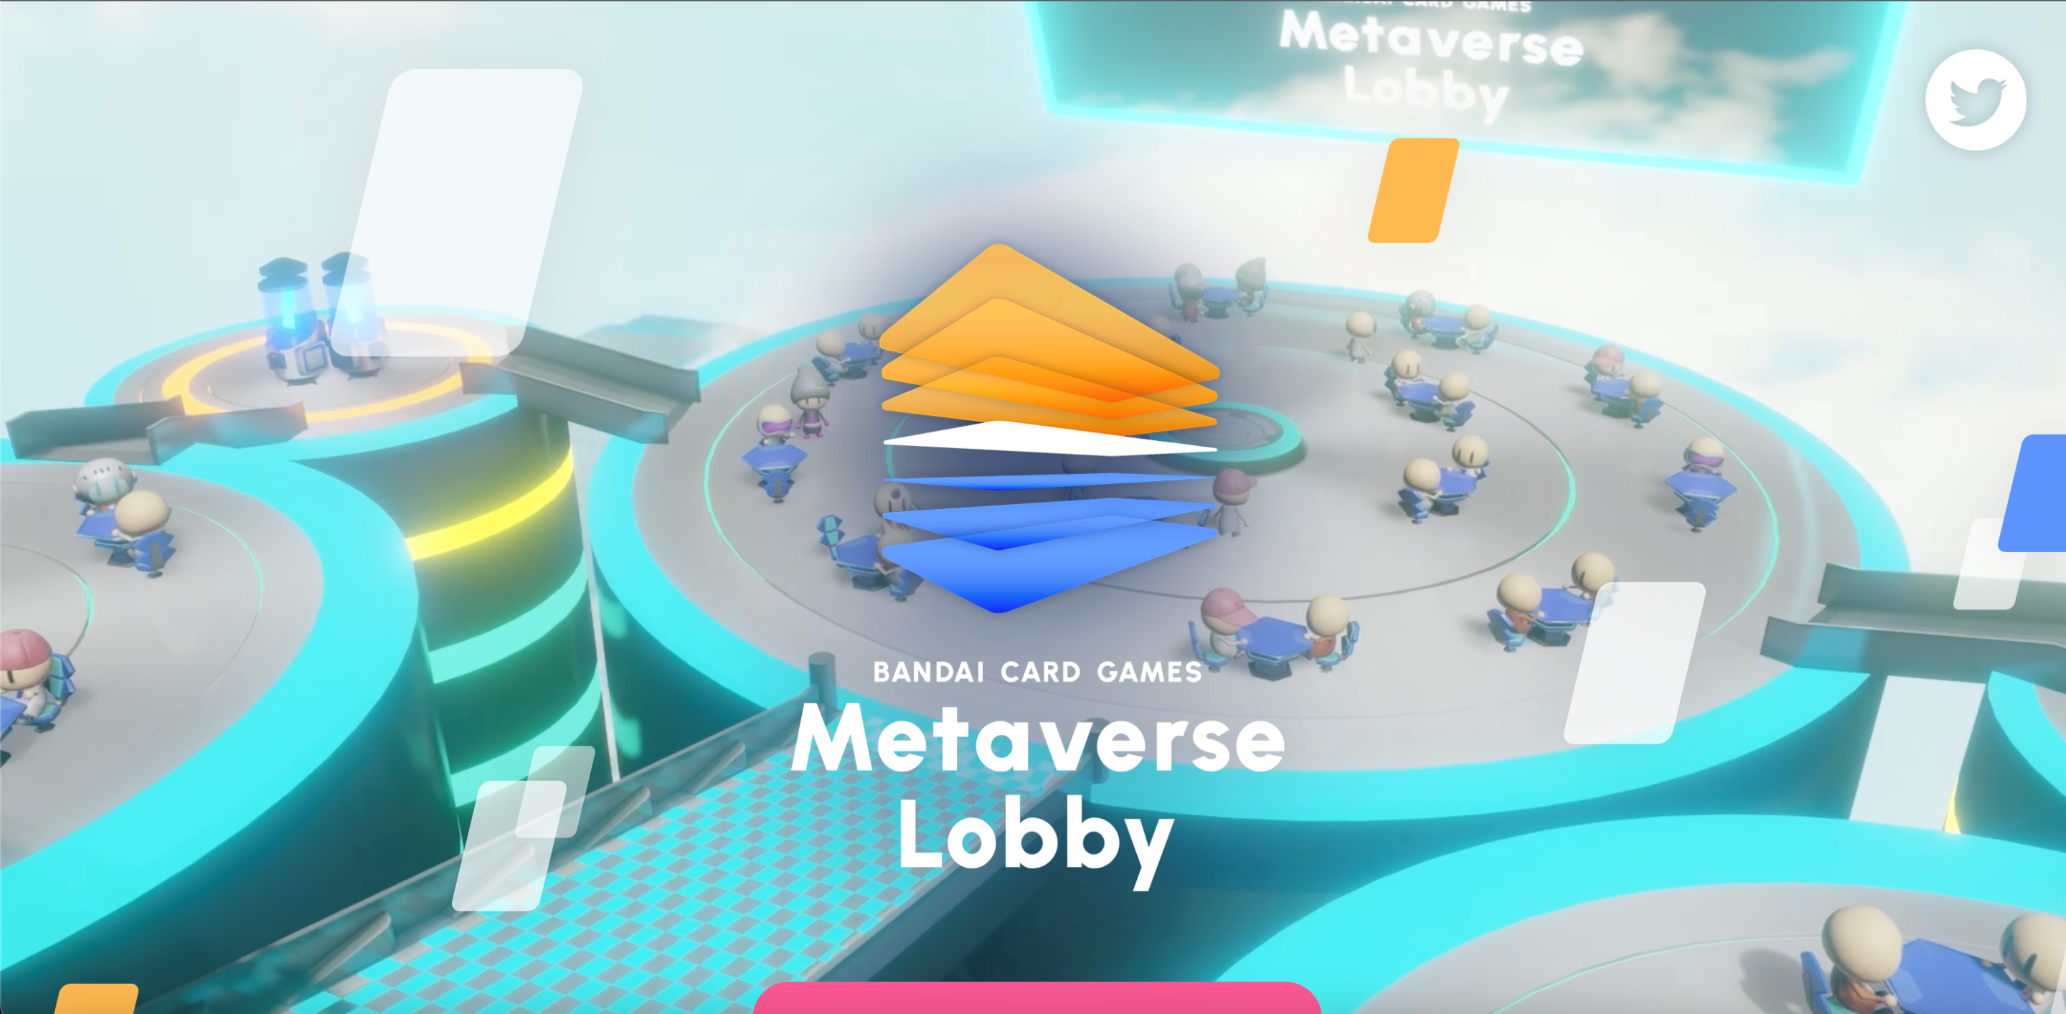 「BANDAI CARD GAMES Metaverse Lobby」
2023年3月サービス開始！